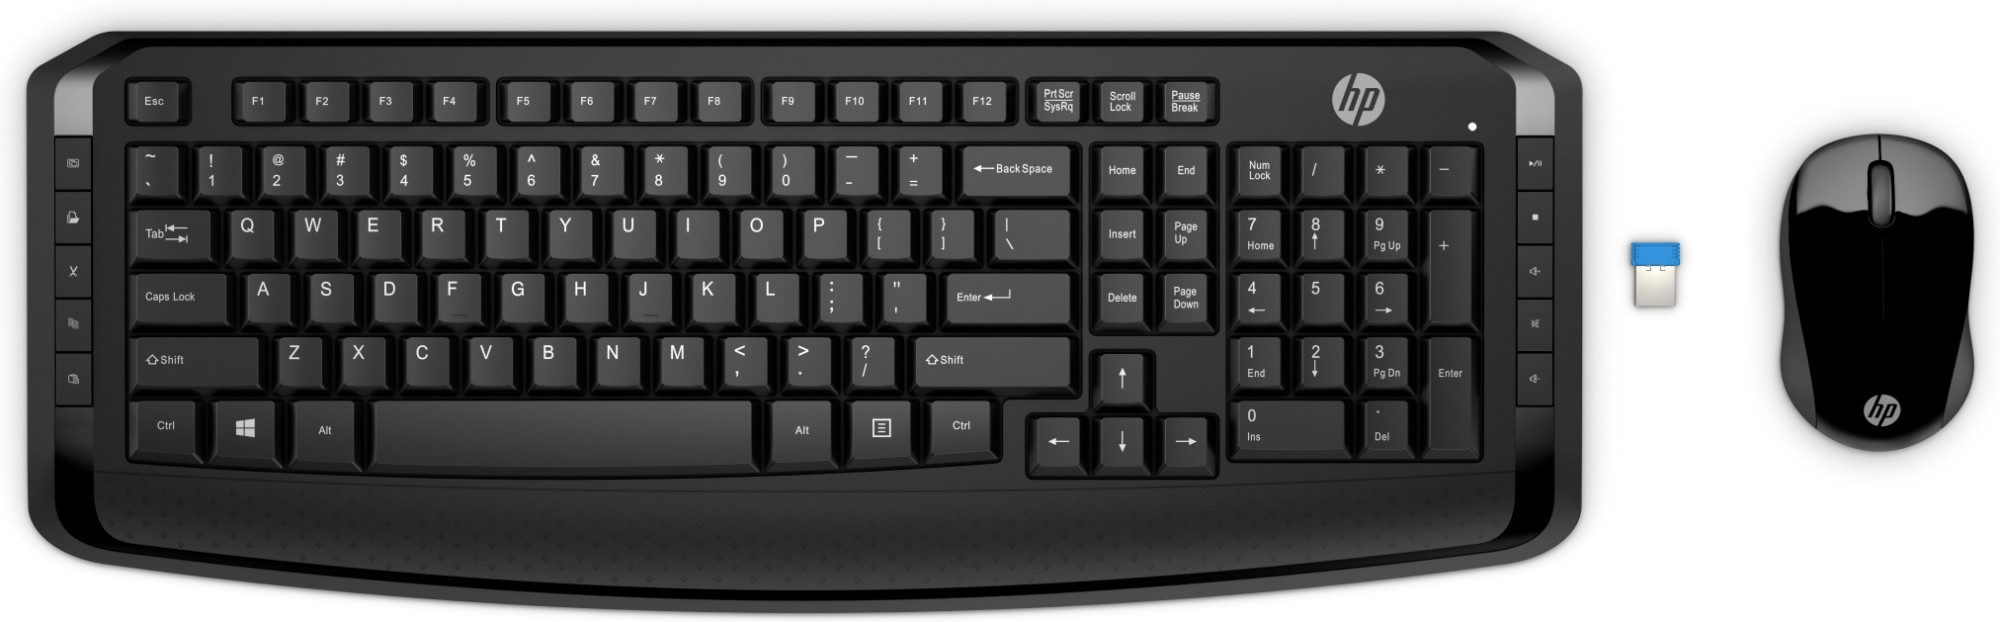 HP draadloos toetsenbord en muis 300, voorraad distributeur/groothandel voor om verkopen - Stock In The Channel